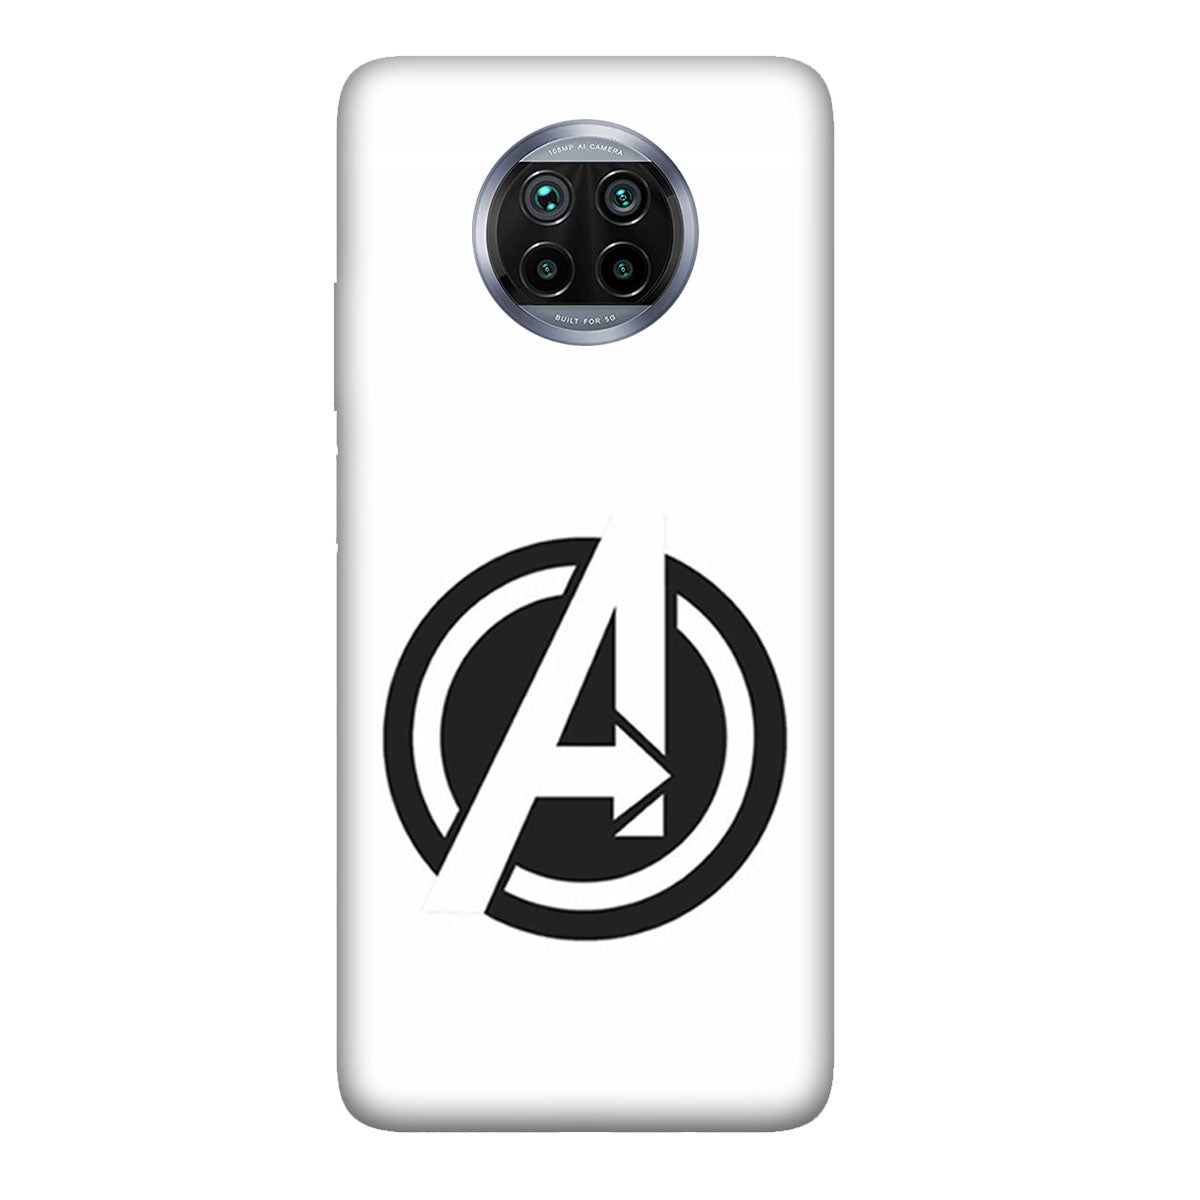 Avenger White Logo - Mobile Phone Cover - Hard Case